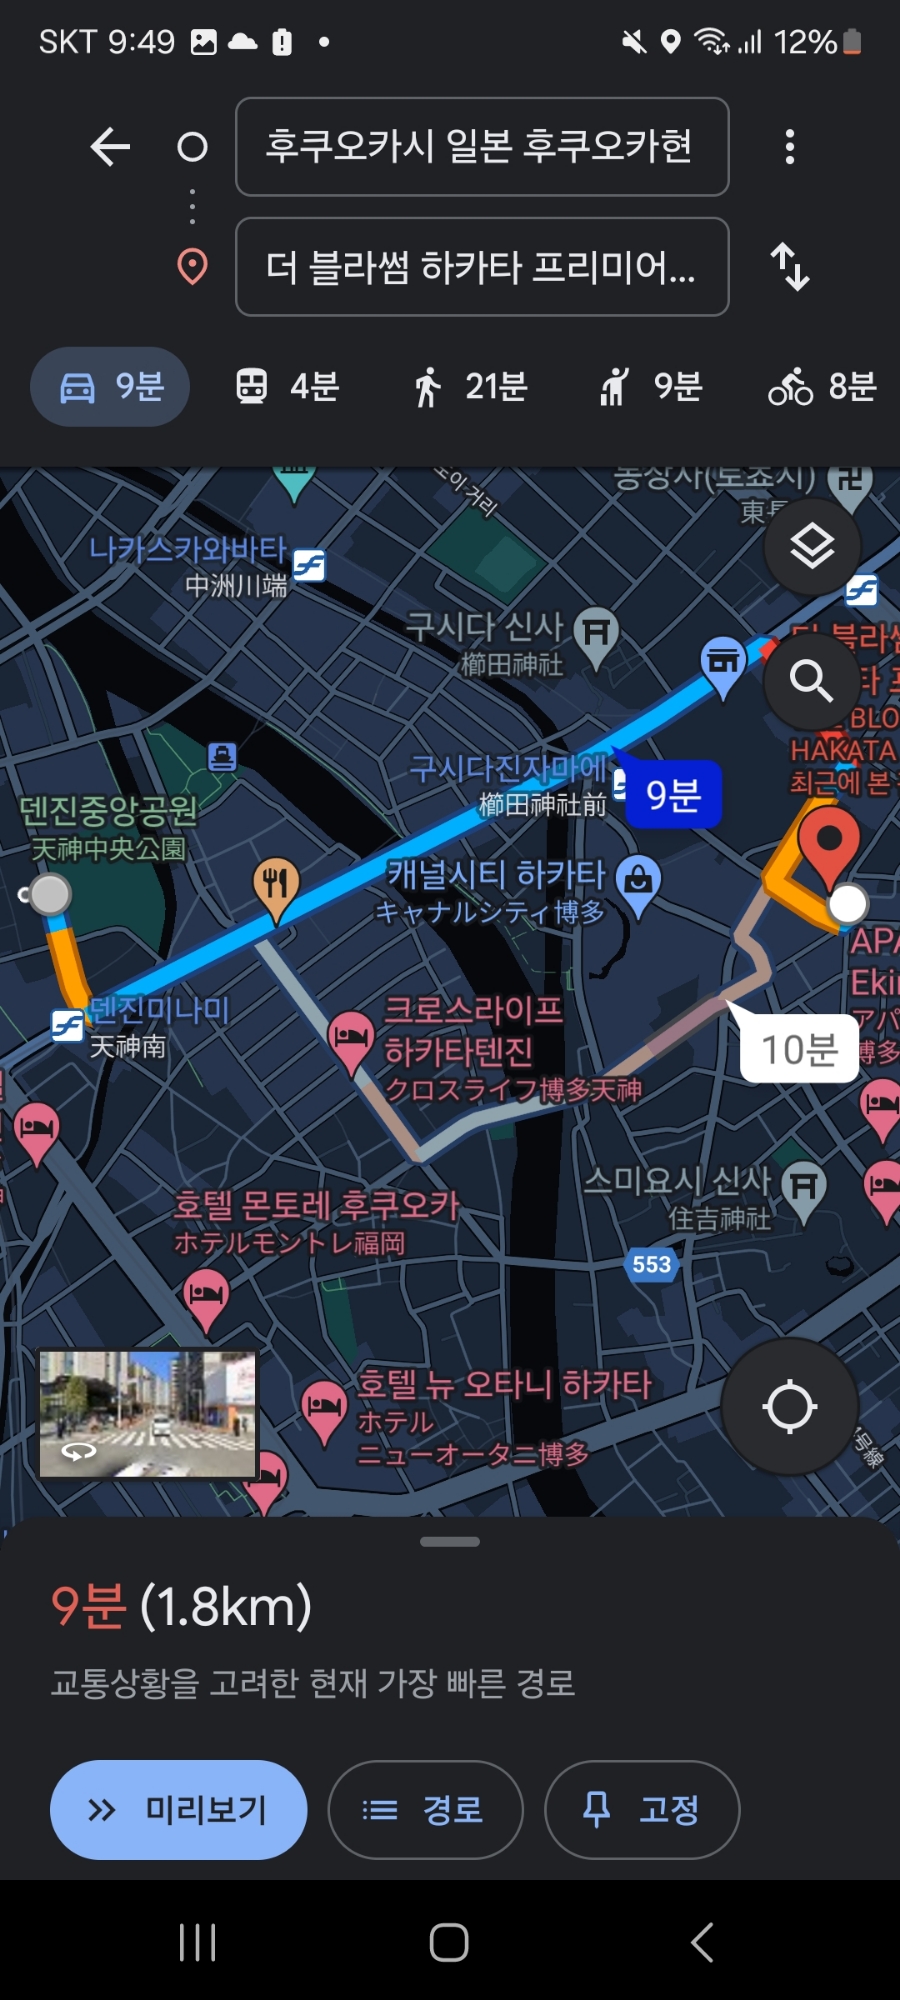 구글맵 길찾기 로드뷰 사용 방법 여행계획 세우기